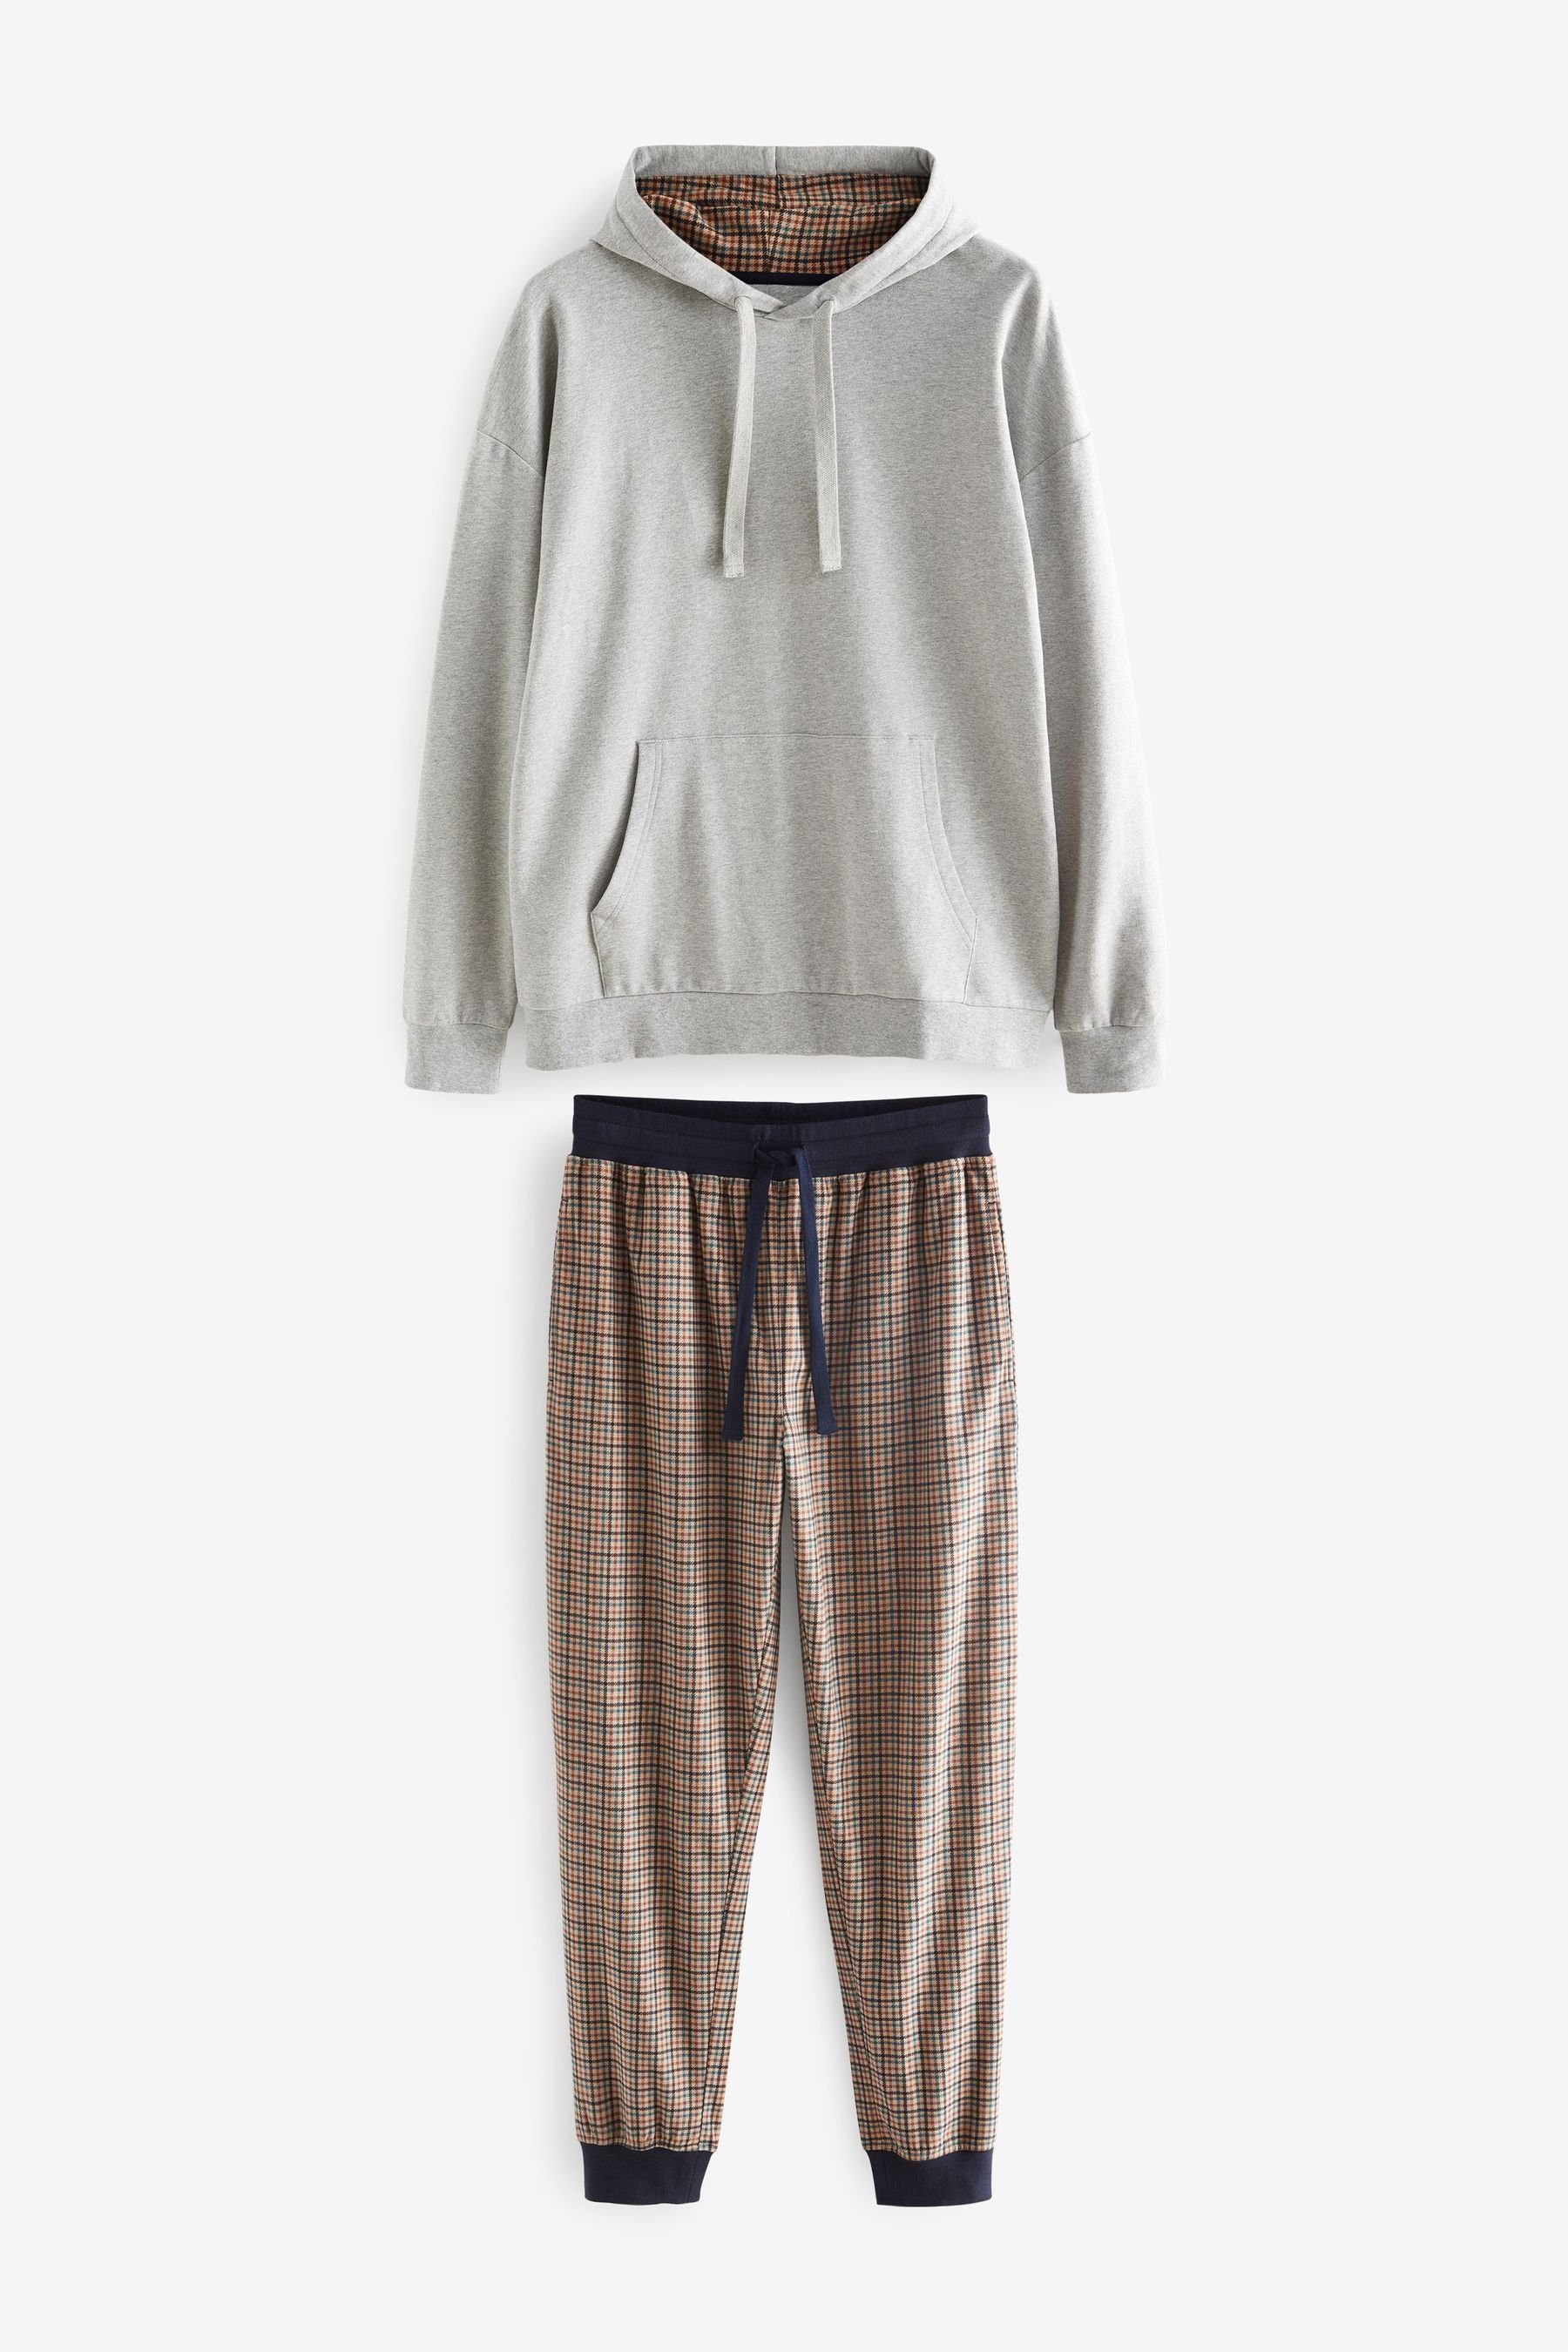 Next Pyjama MotionFlex Kuscheliger Schlafanzug mit Bündchen (2 tlg) Grey/Neutral Check Hooded